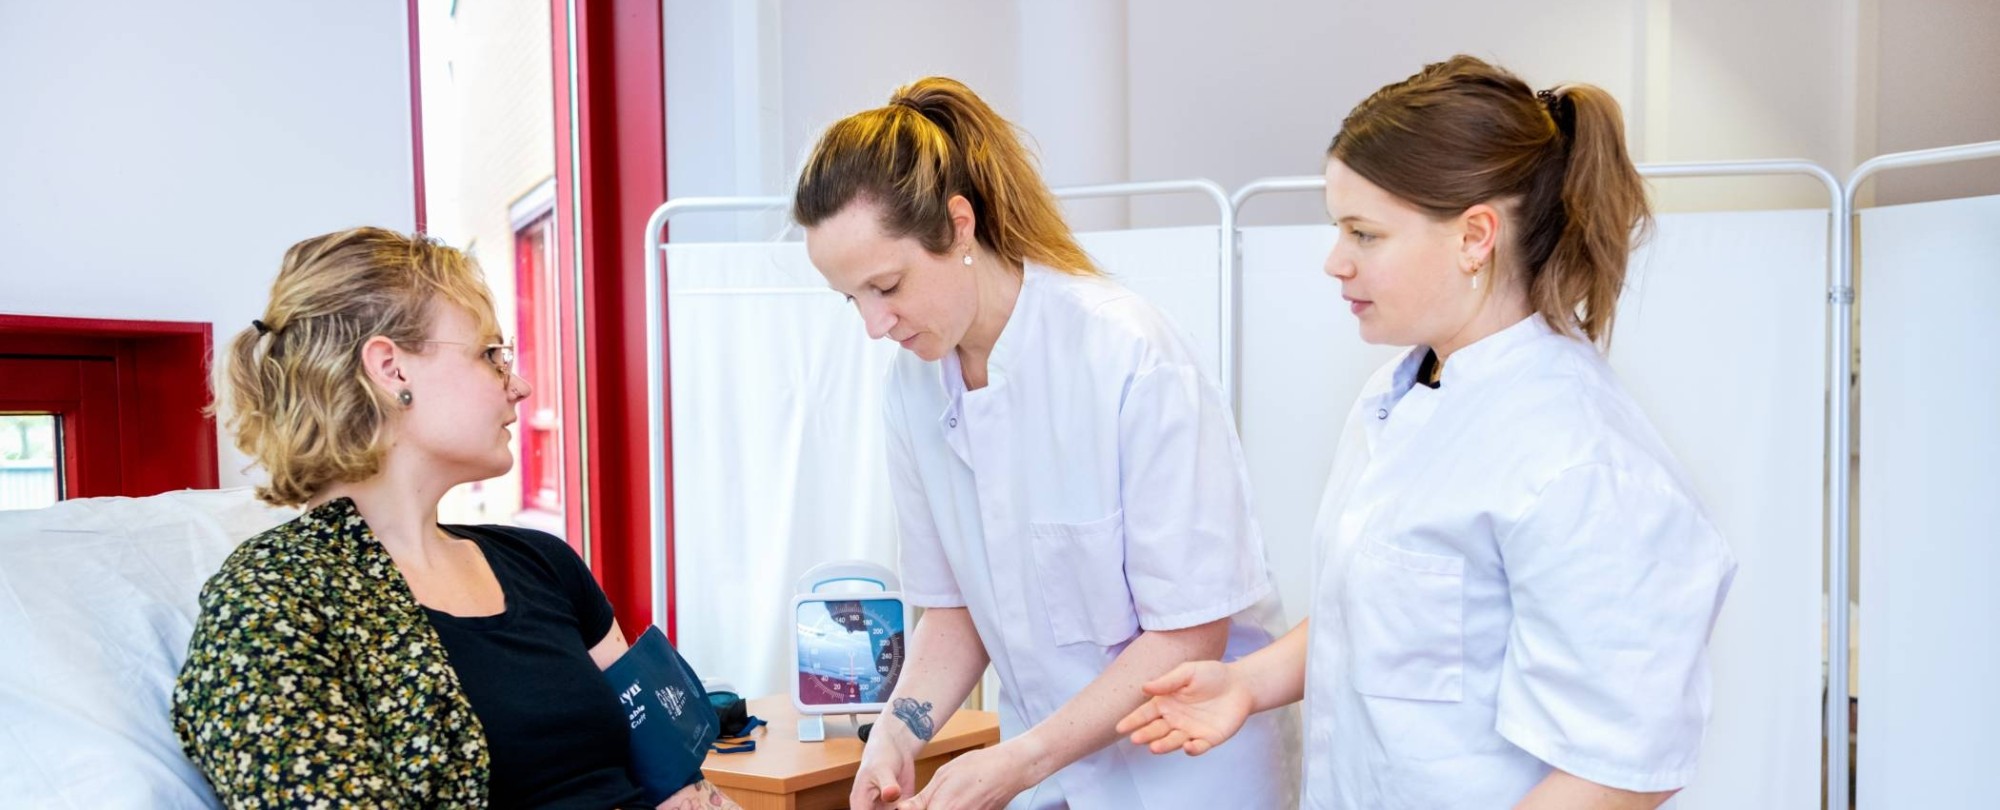 3 studenten oefenen met bloeddruk meten op bed tijdens les Verpleegkunde deeltijd